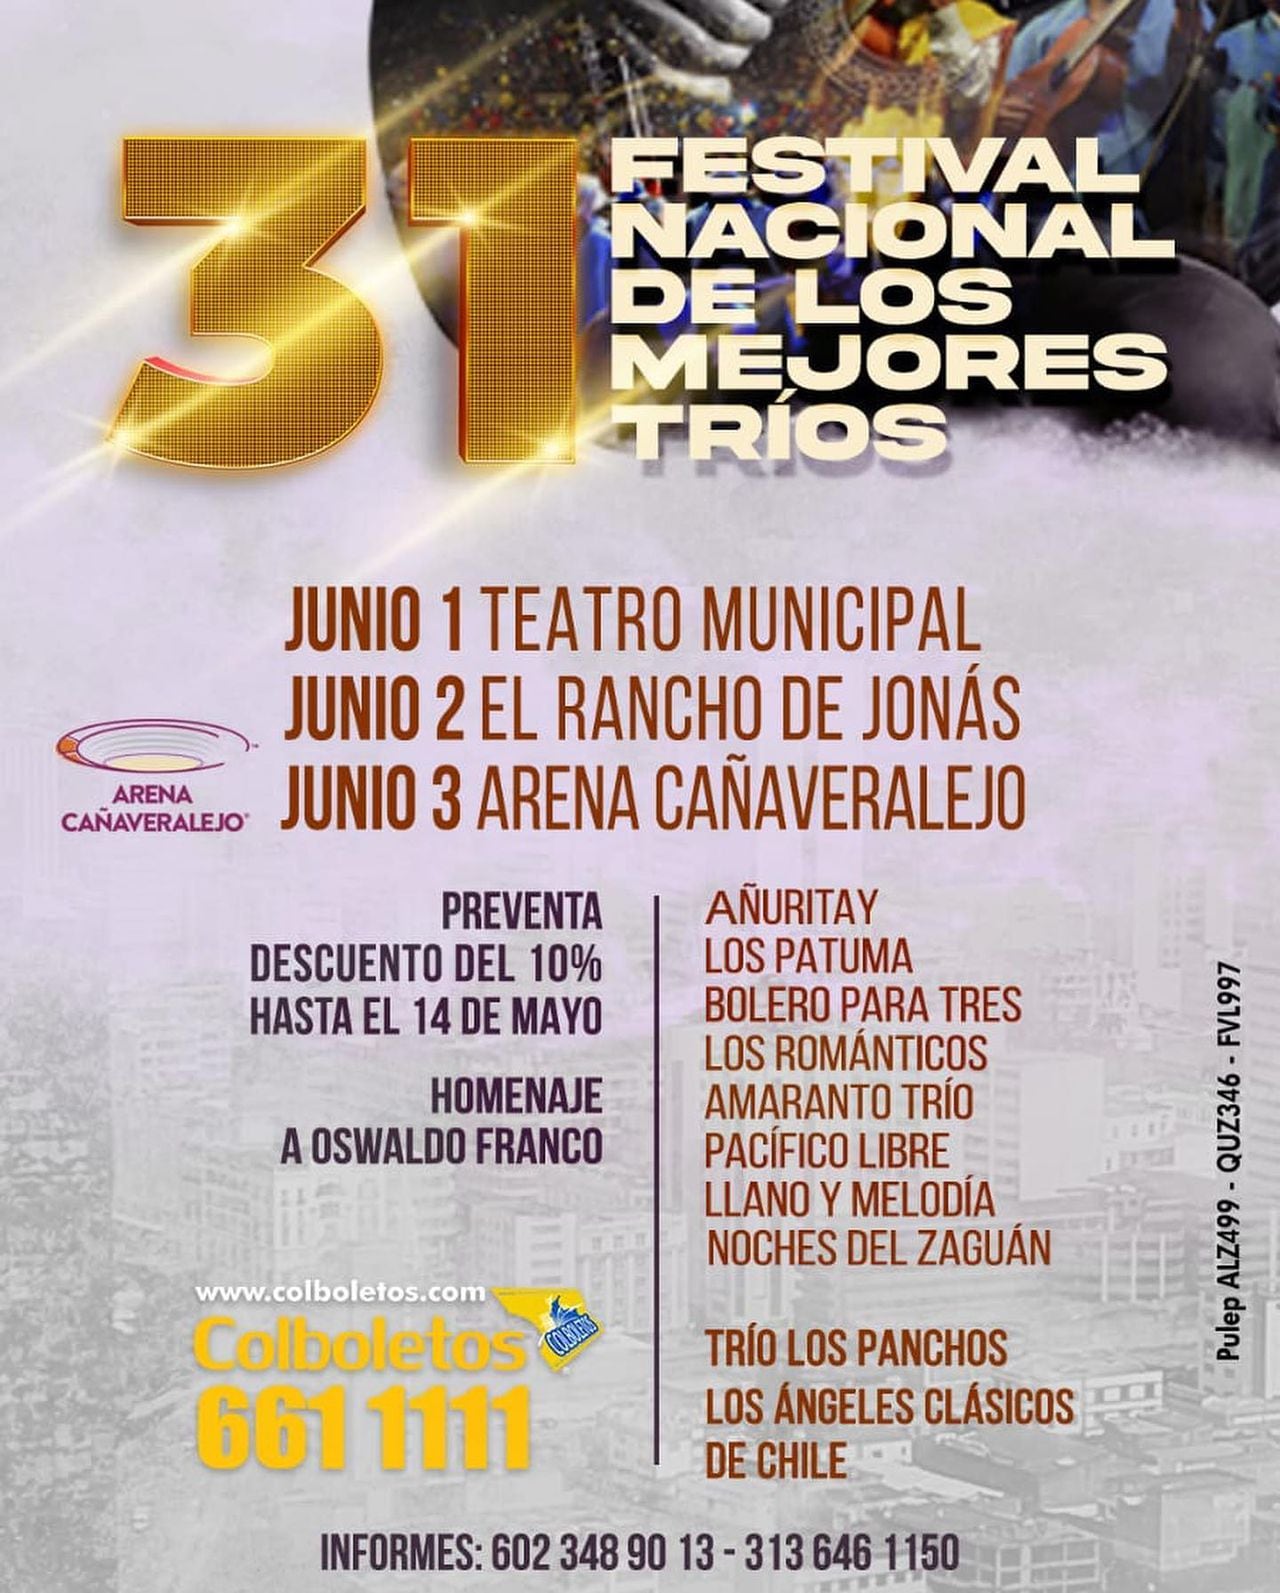 El Festival Nacional de Tríos es organizado por la Fundación Nacional del Artista Colombiano desde hace 31 años.